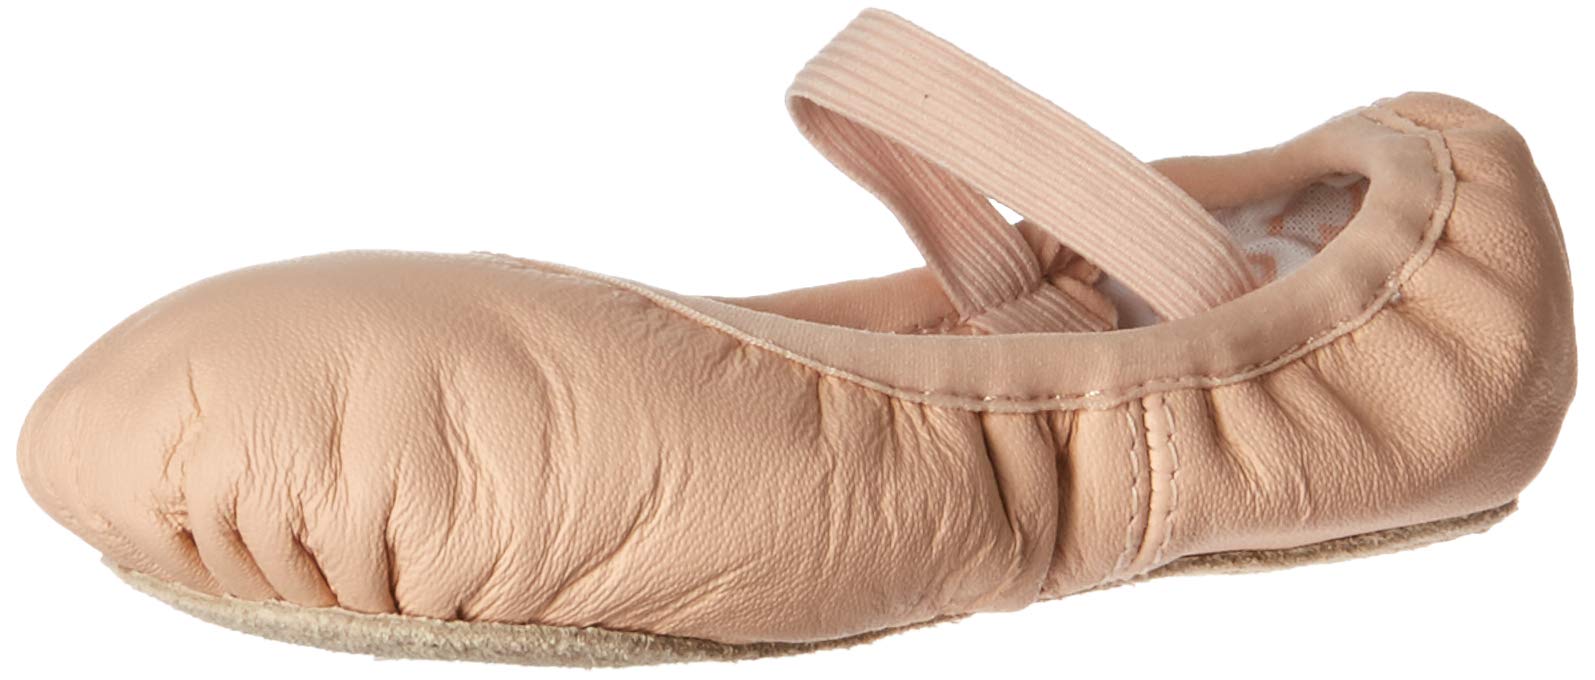 Bloch Unisex-Child Dance Girls' Belle Full-Sole Leather Ballet Shoe/Slipper